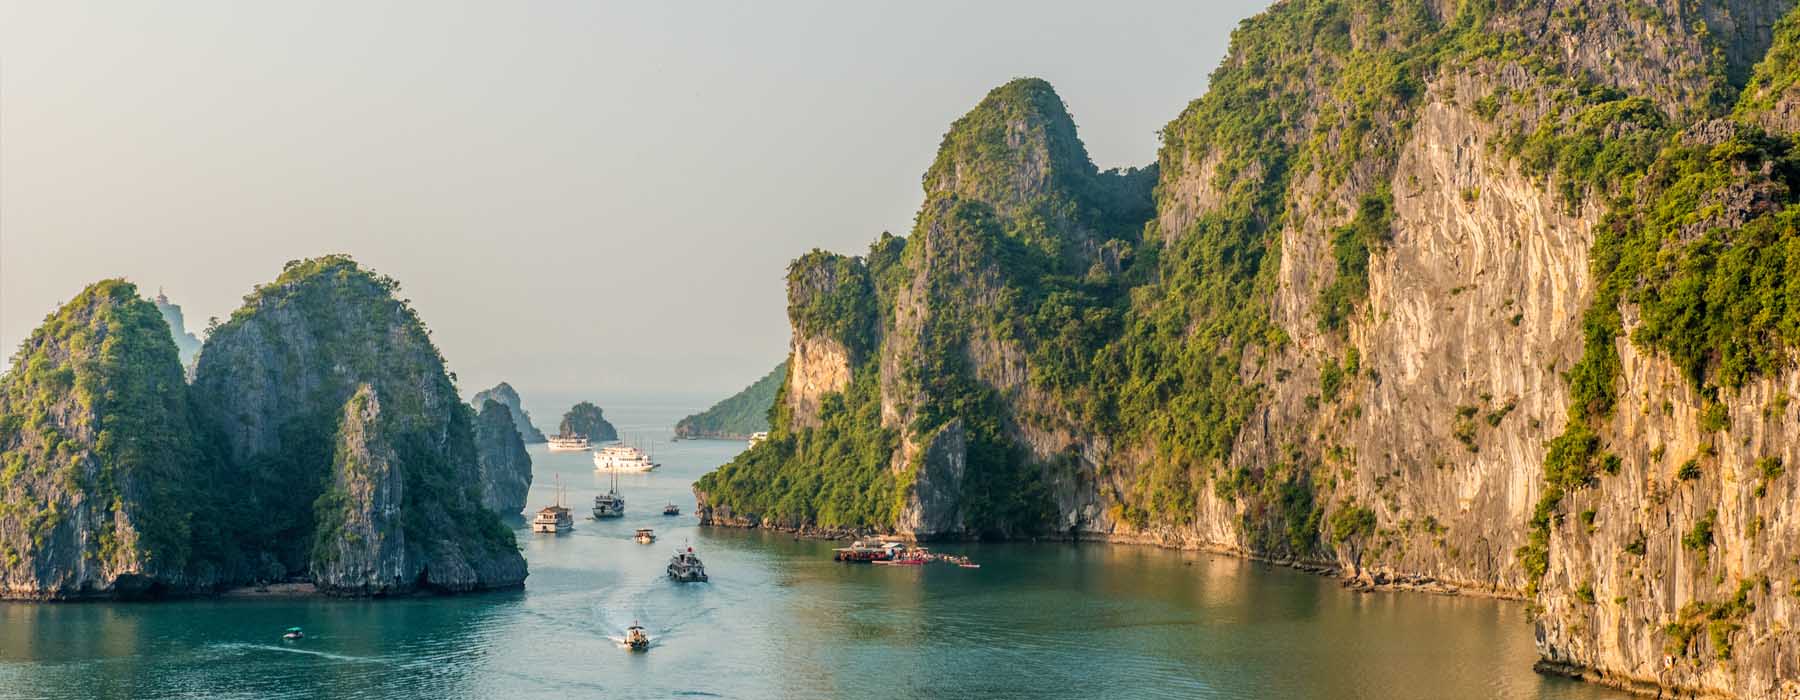 Vietnam<br class="hidden-md hidden-lg" /> Travel Bucket List